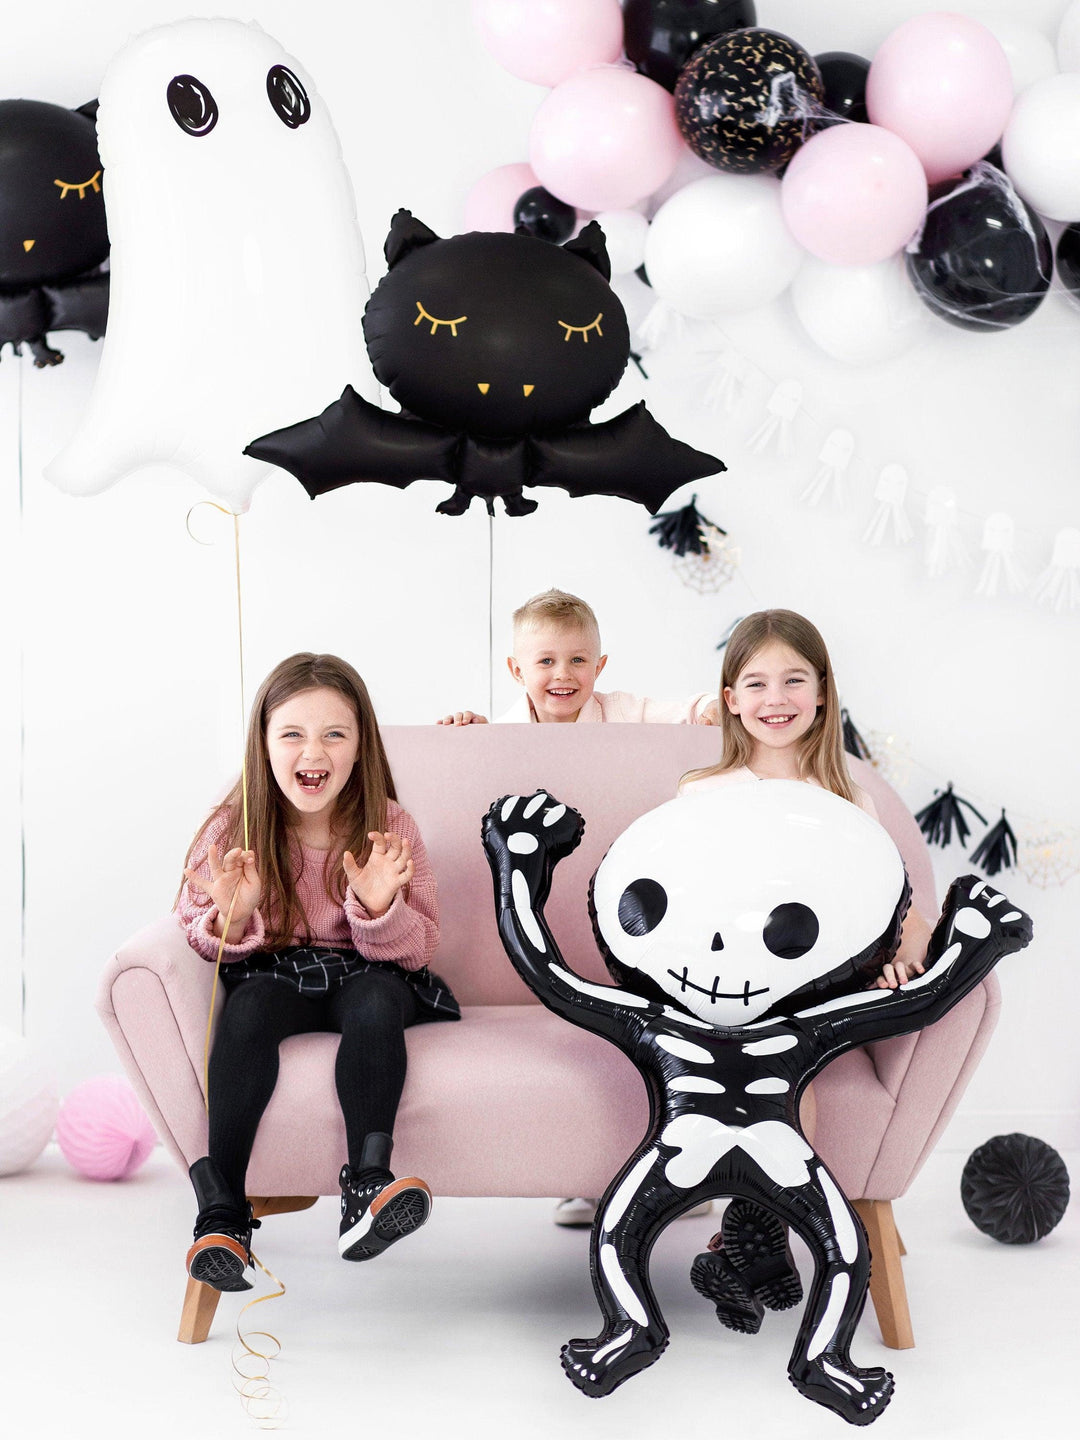 Large Halloween Bat Balloon - Black Bat Balloon - Halloween Party Decorations - Kids Halloween